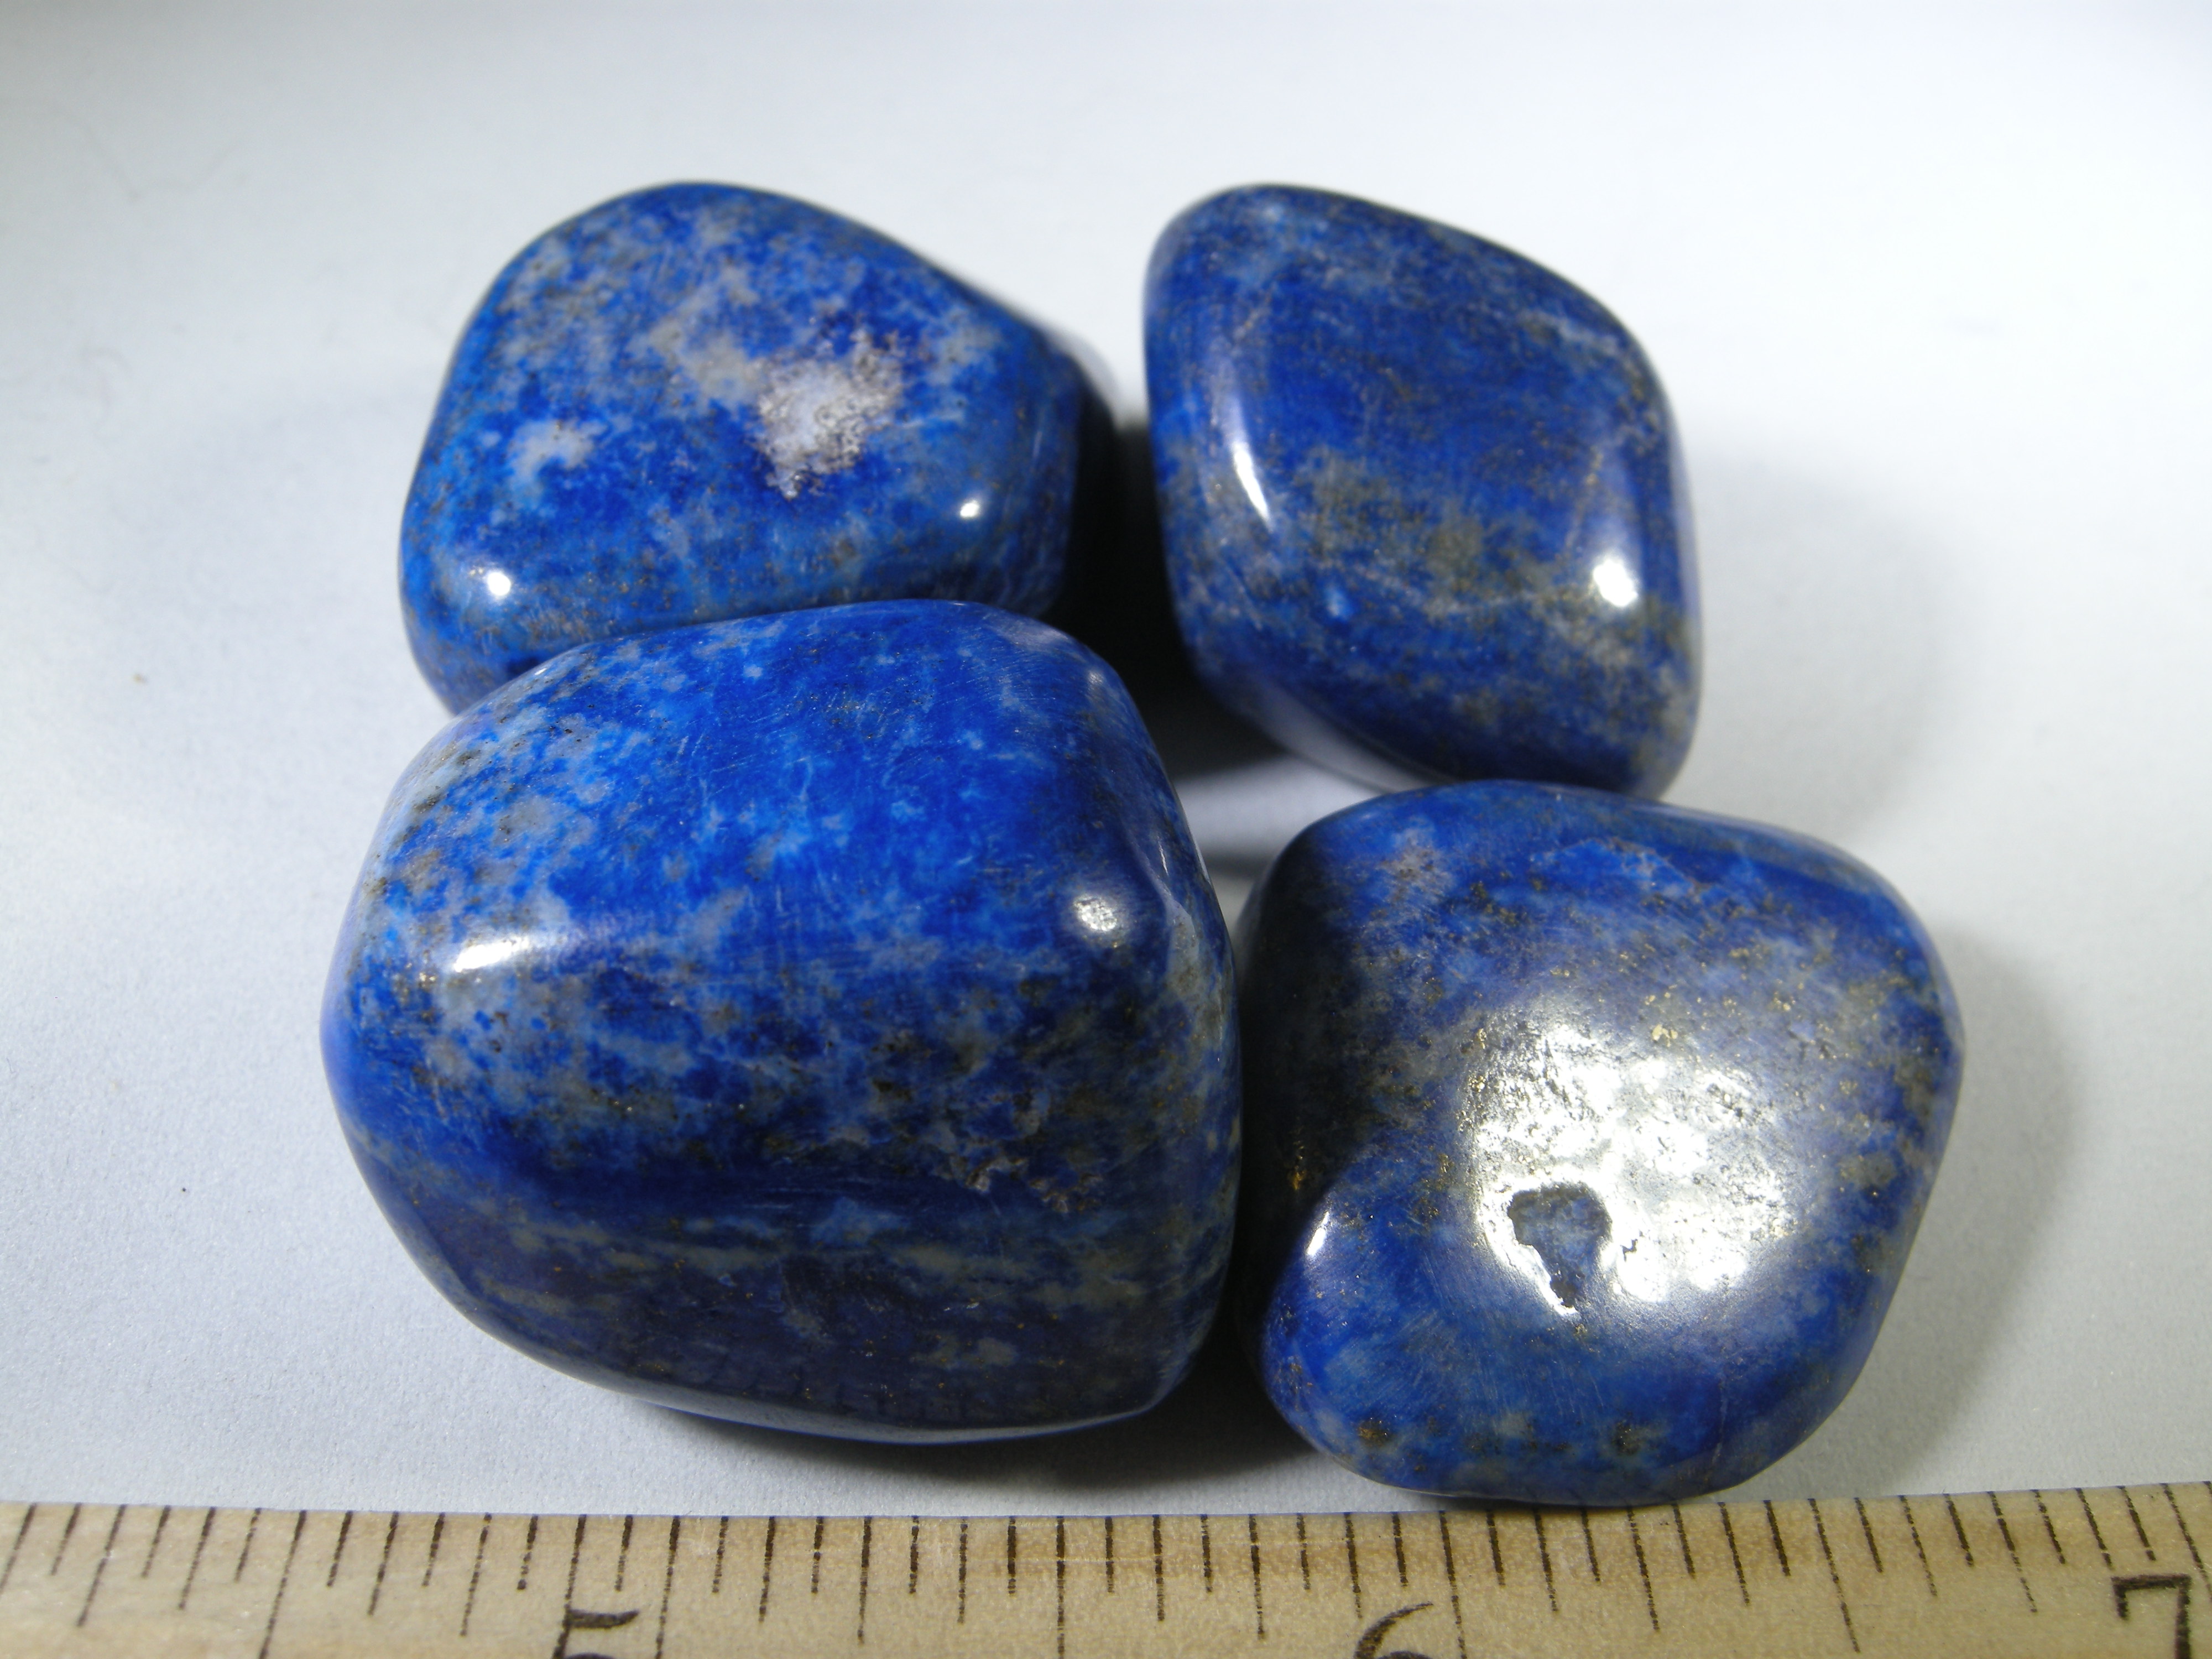 lapis lazuli price